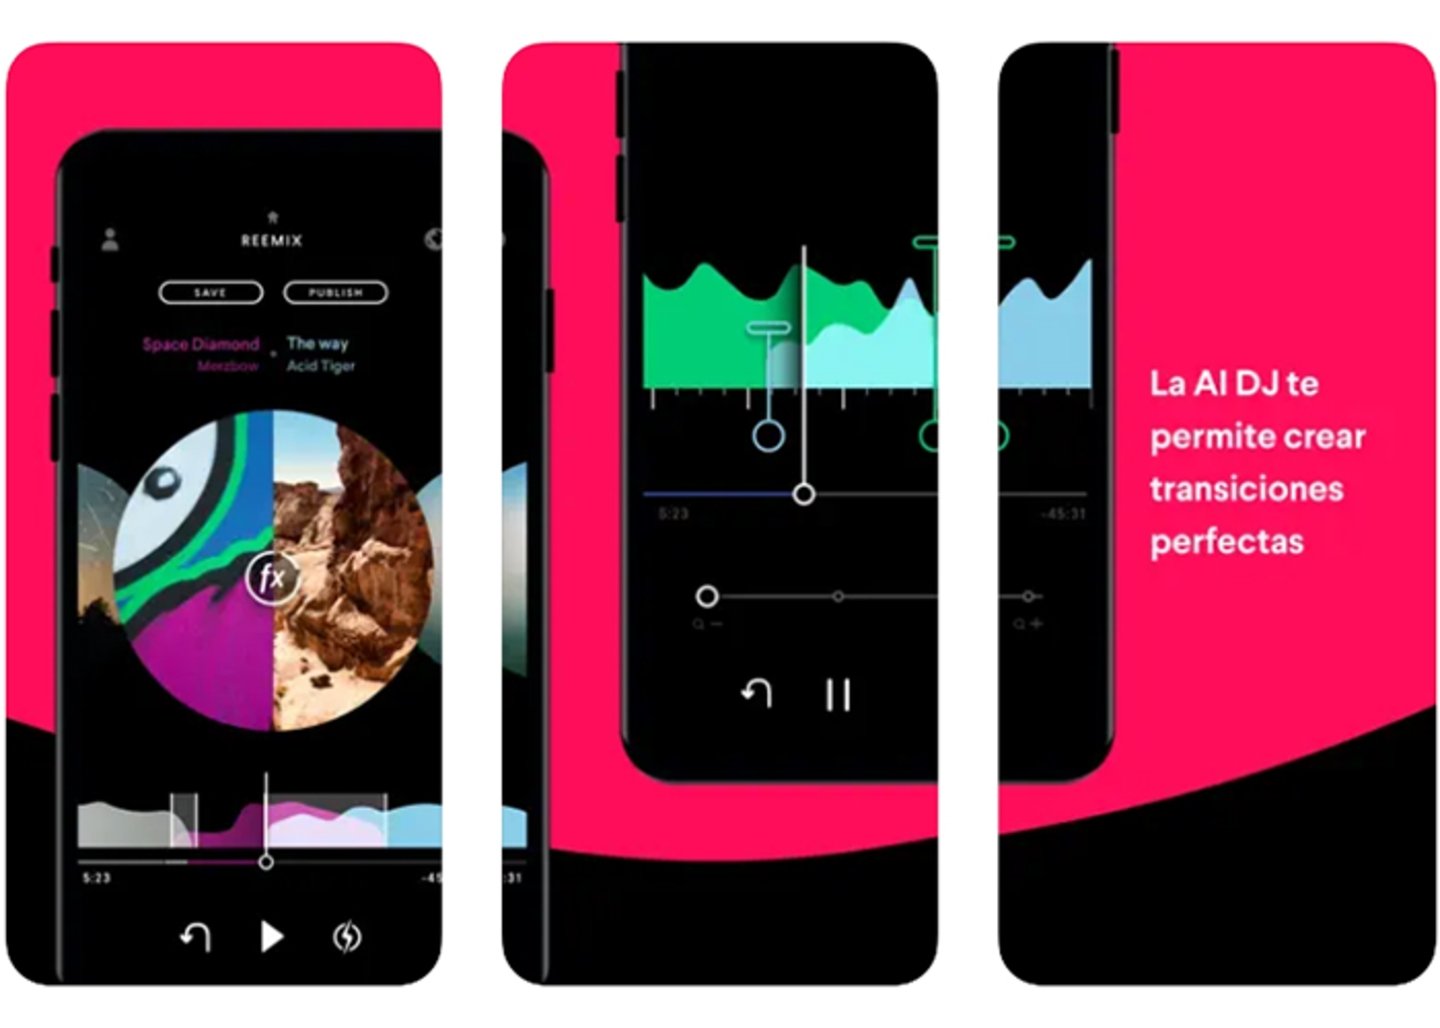 La revolucion musical - Pacemaker, la app de inteligencia artificial para DJs